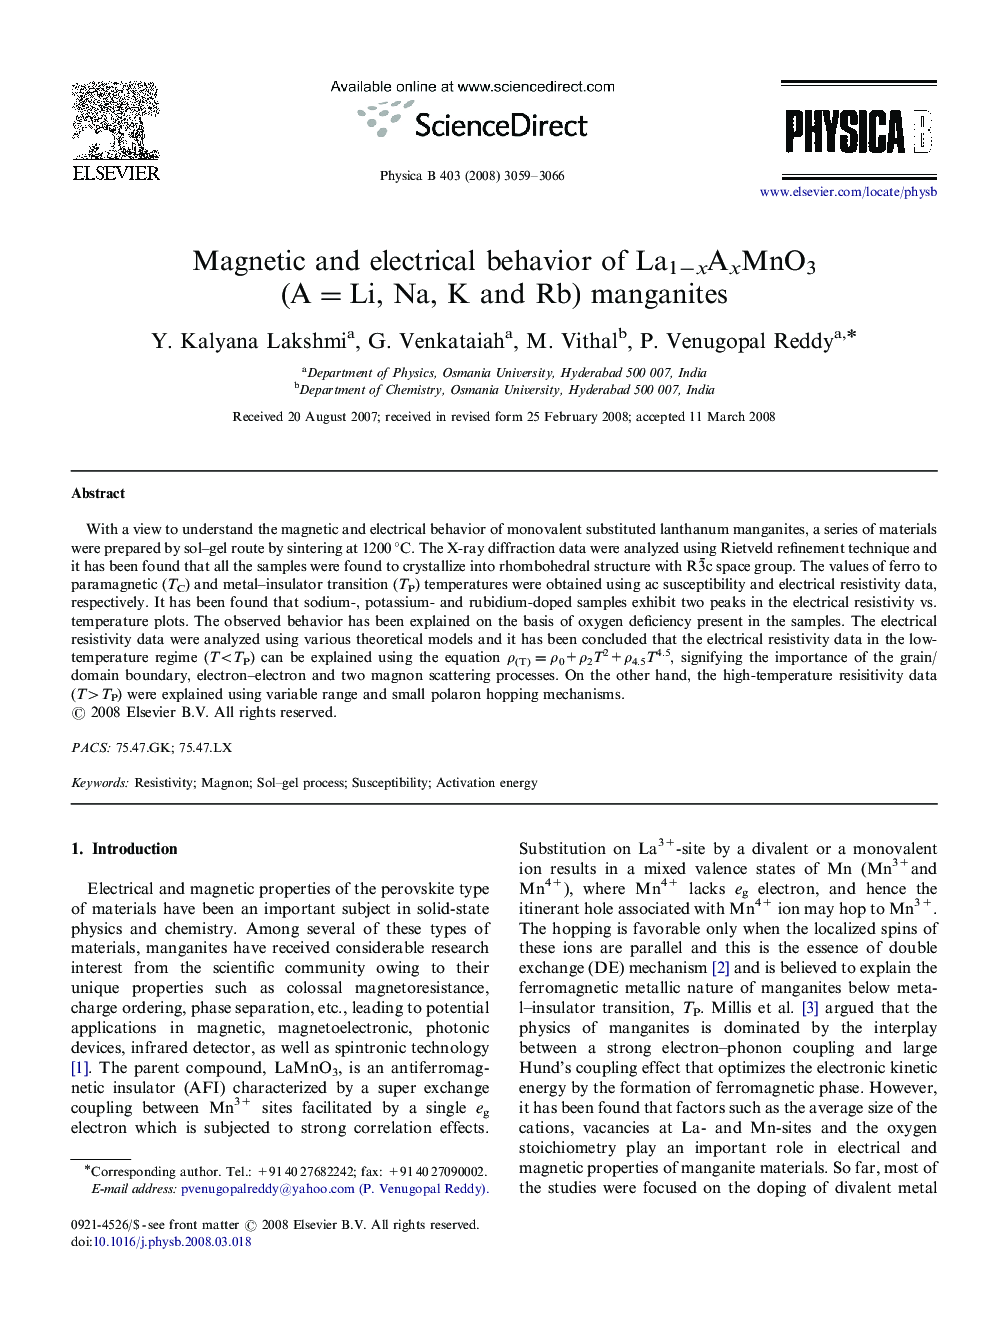 Magnetic and electrical behavior of La1−xAxMnO3 (A=Li, Na, K and Rb) manganites